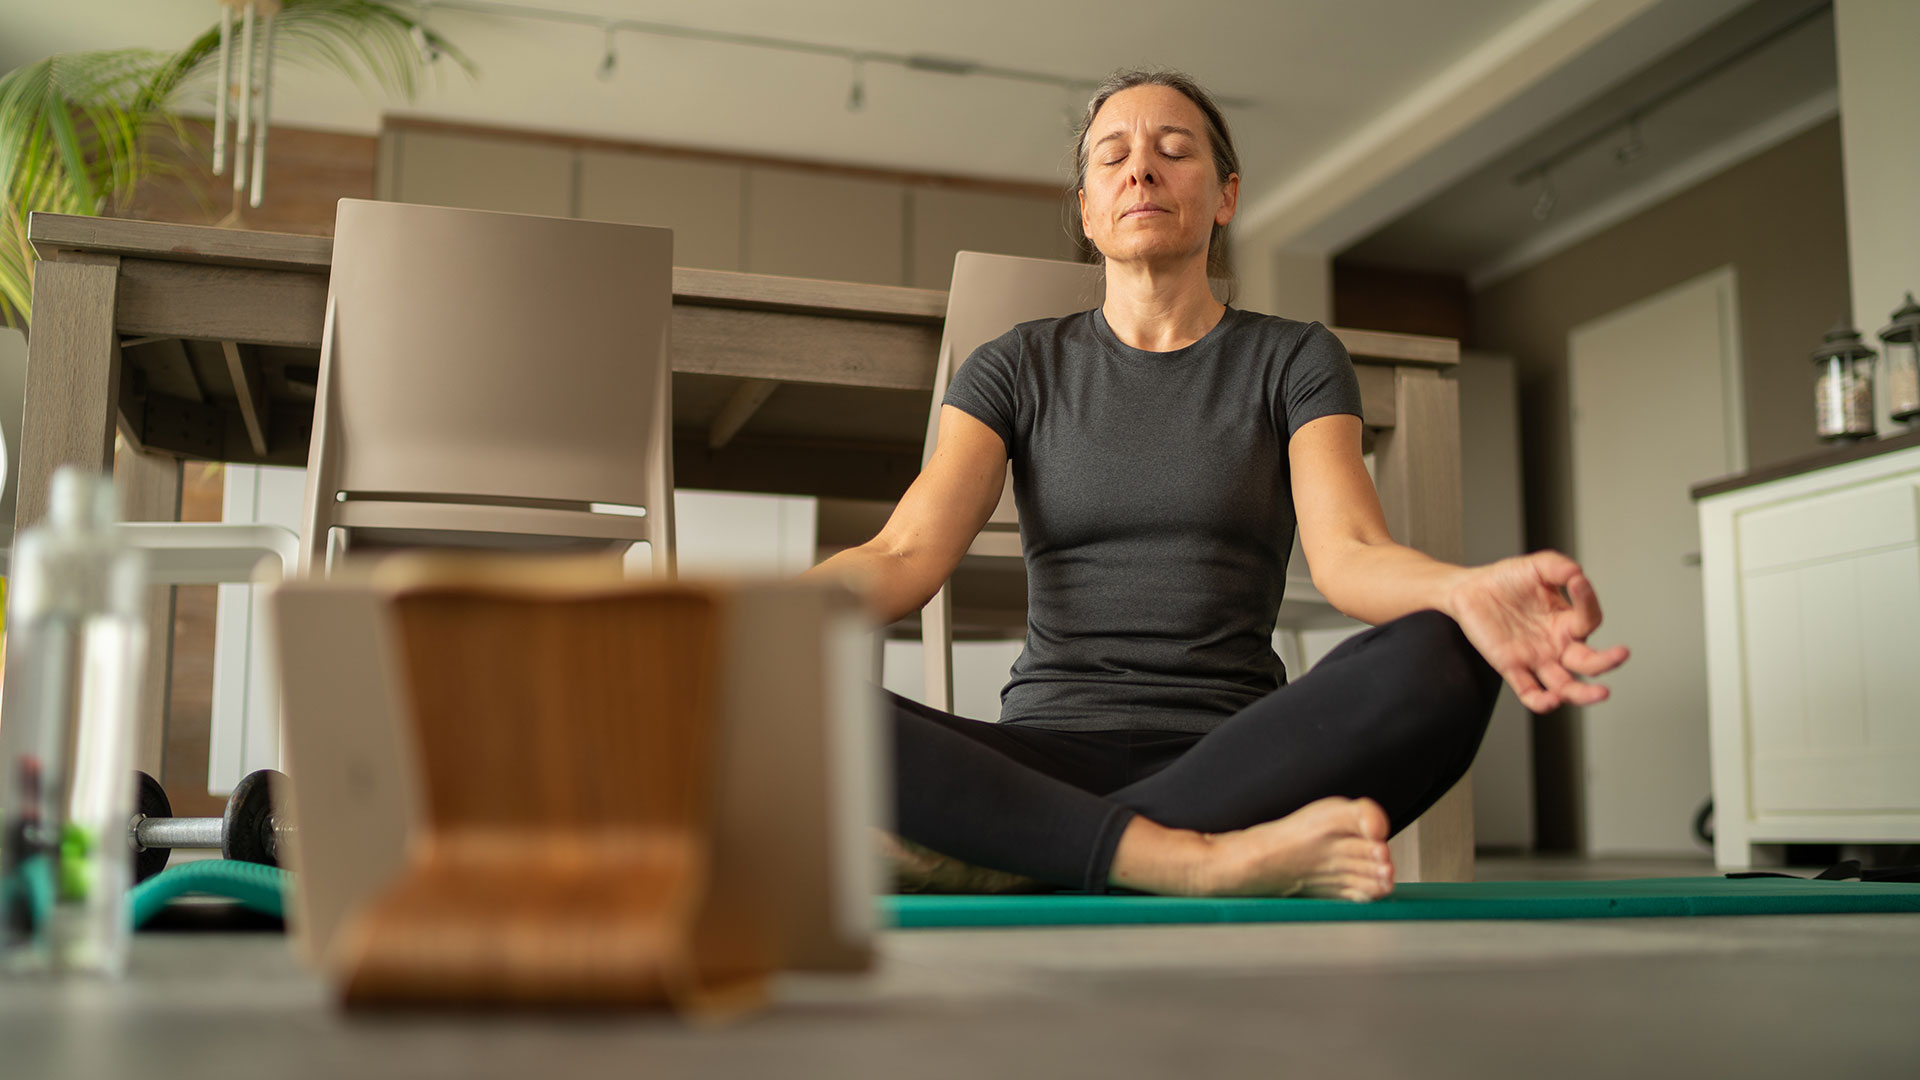 Establecer pequeñas pausas de desconexión completa ayudan a encarar luego tareas con mayor productividad y energía (Getty Images)